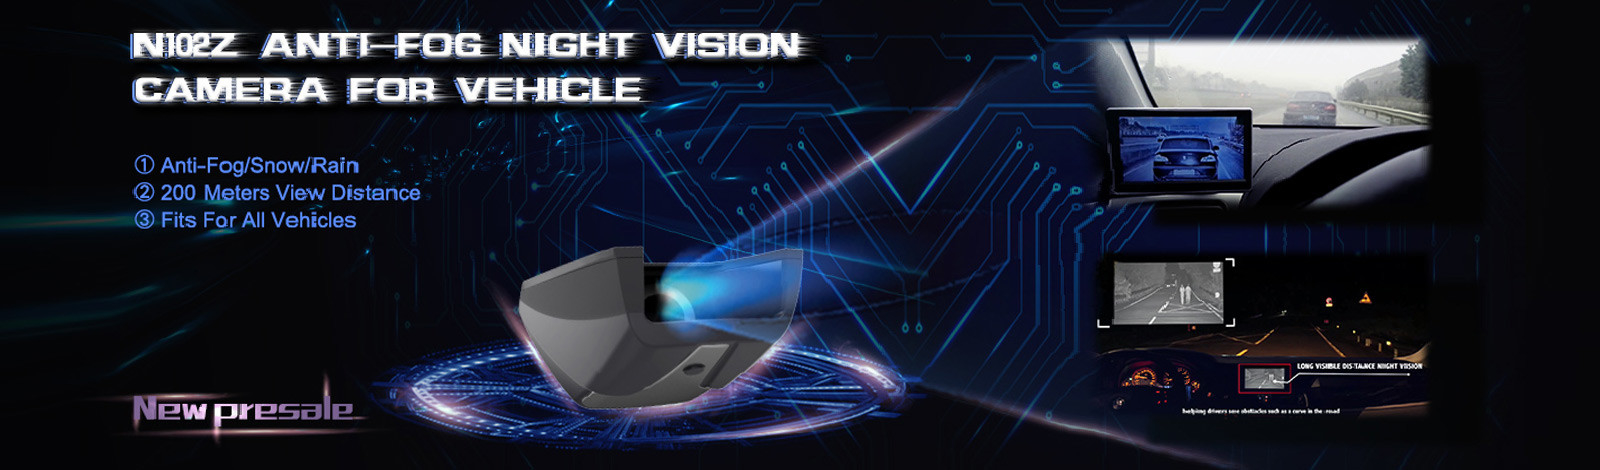 система камеры автомобиля ночного видения